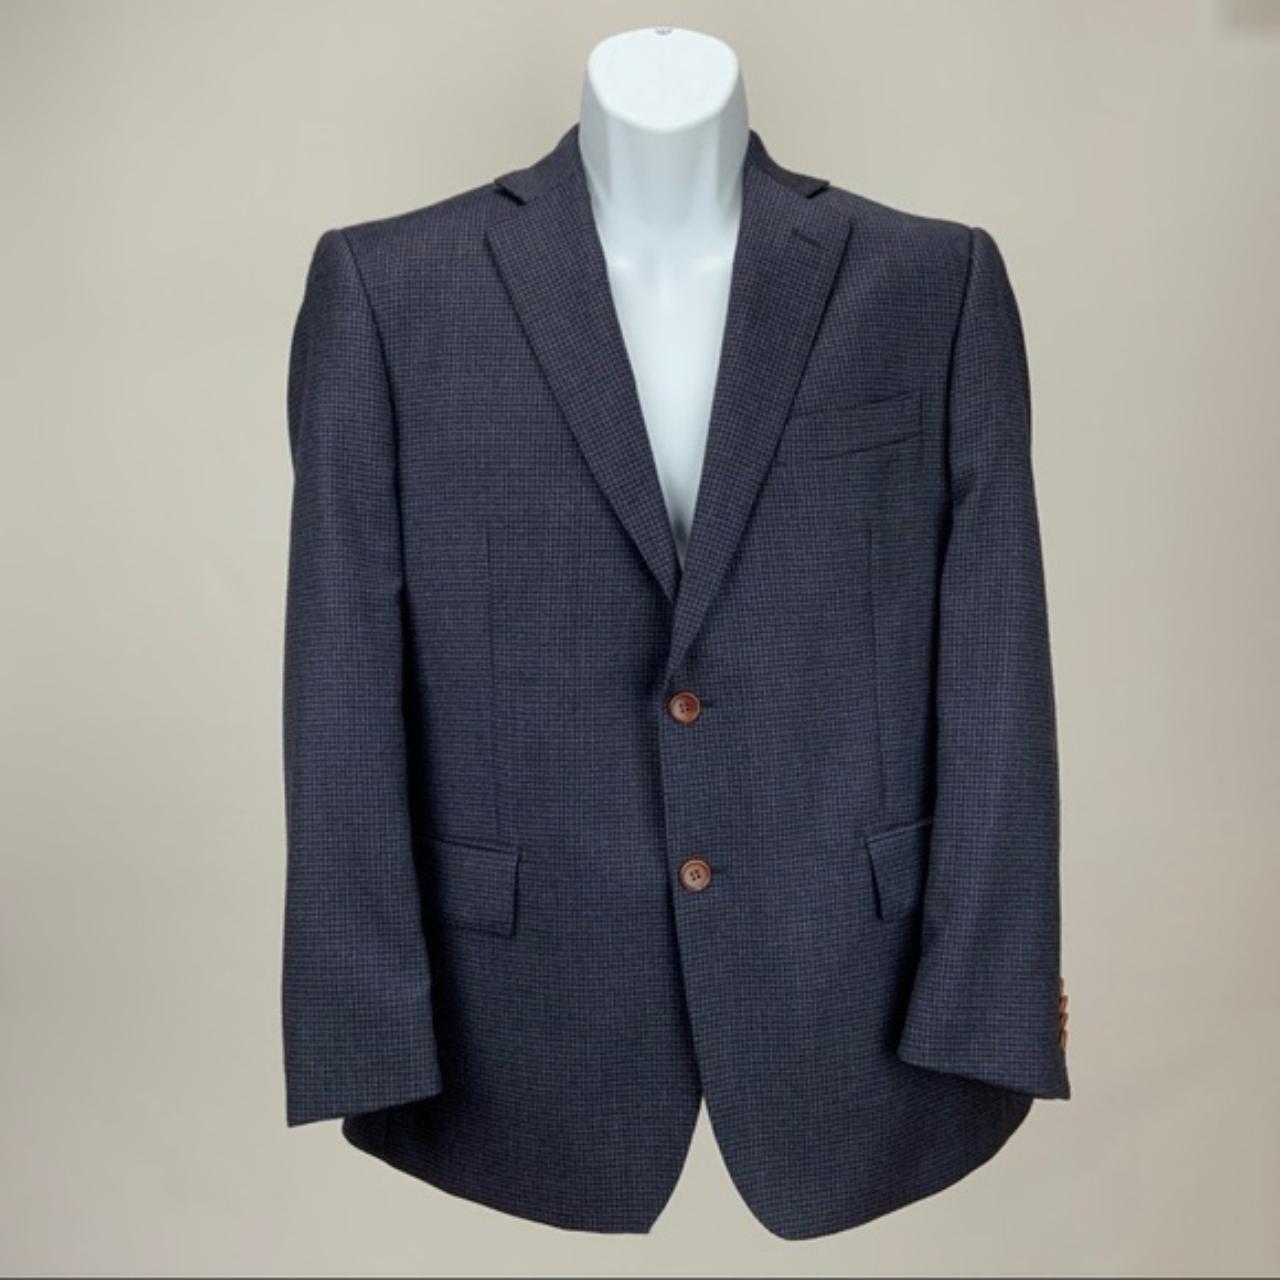 Sartoria Tosi Bresciani Suit Jacket 100% wool 42S... - Depop